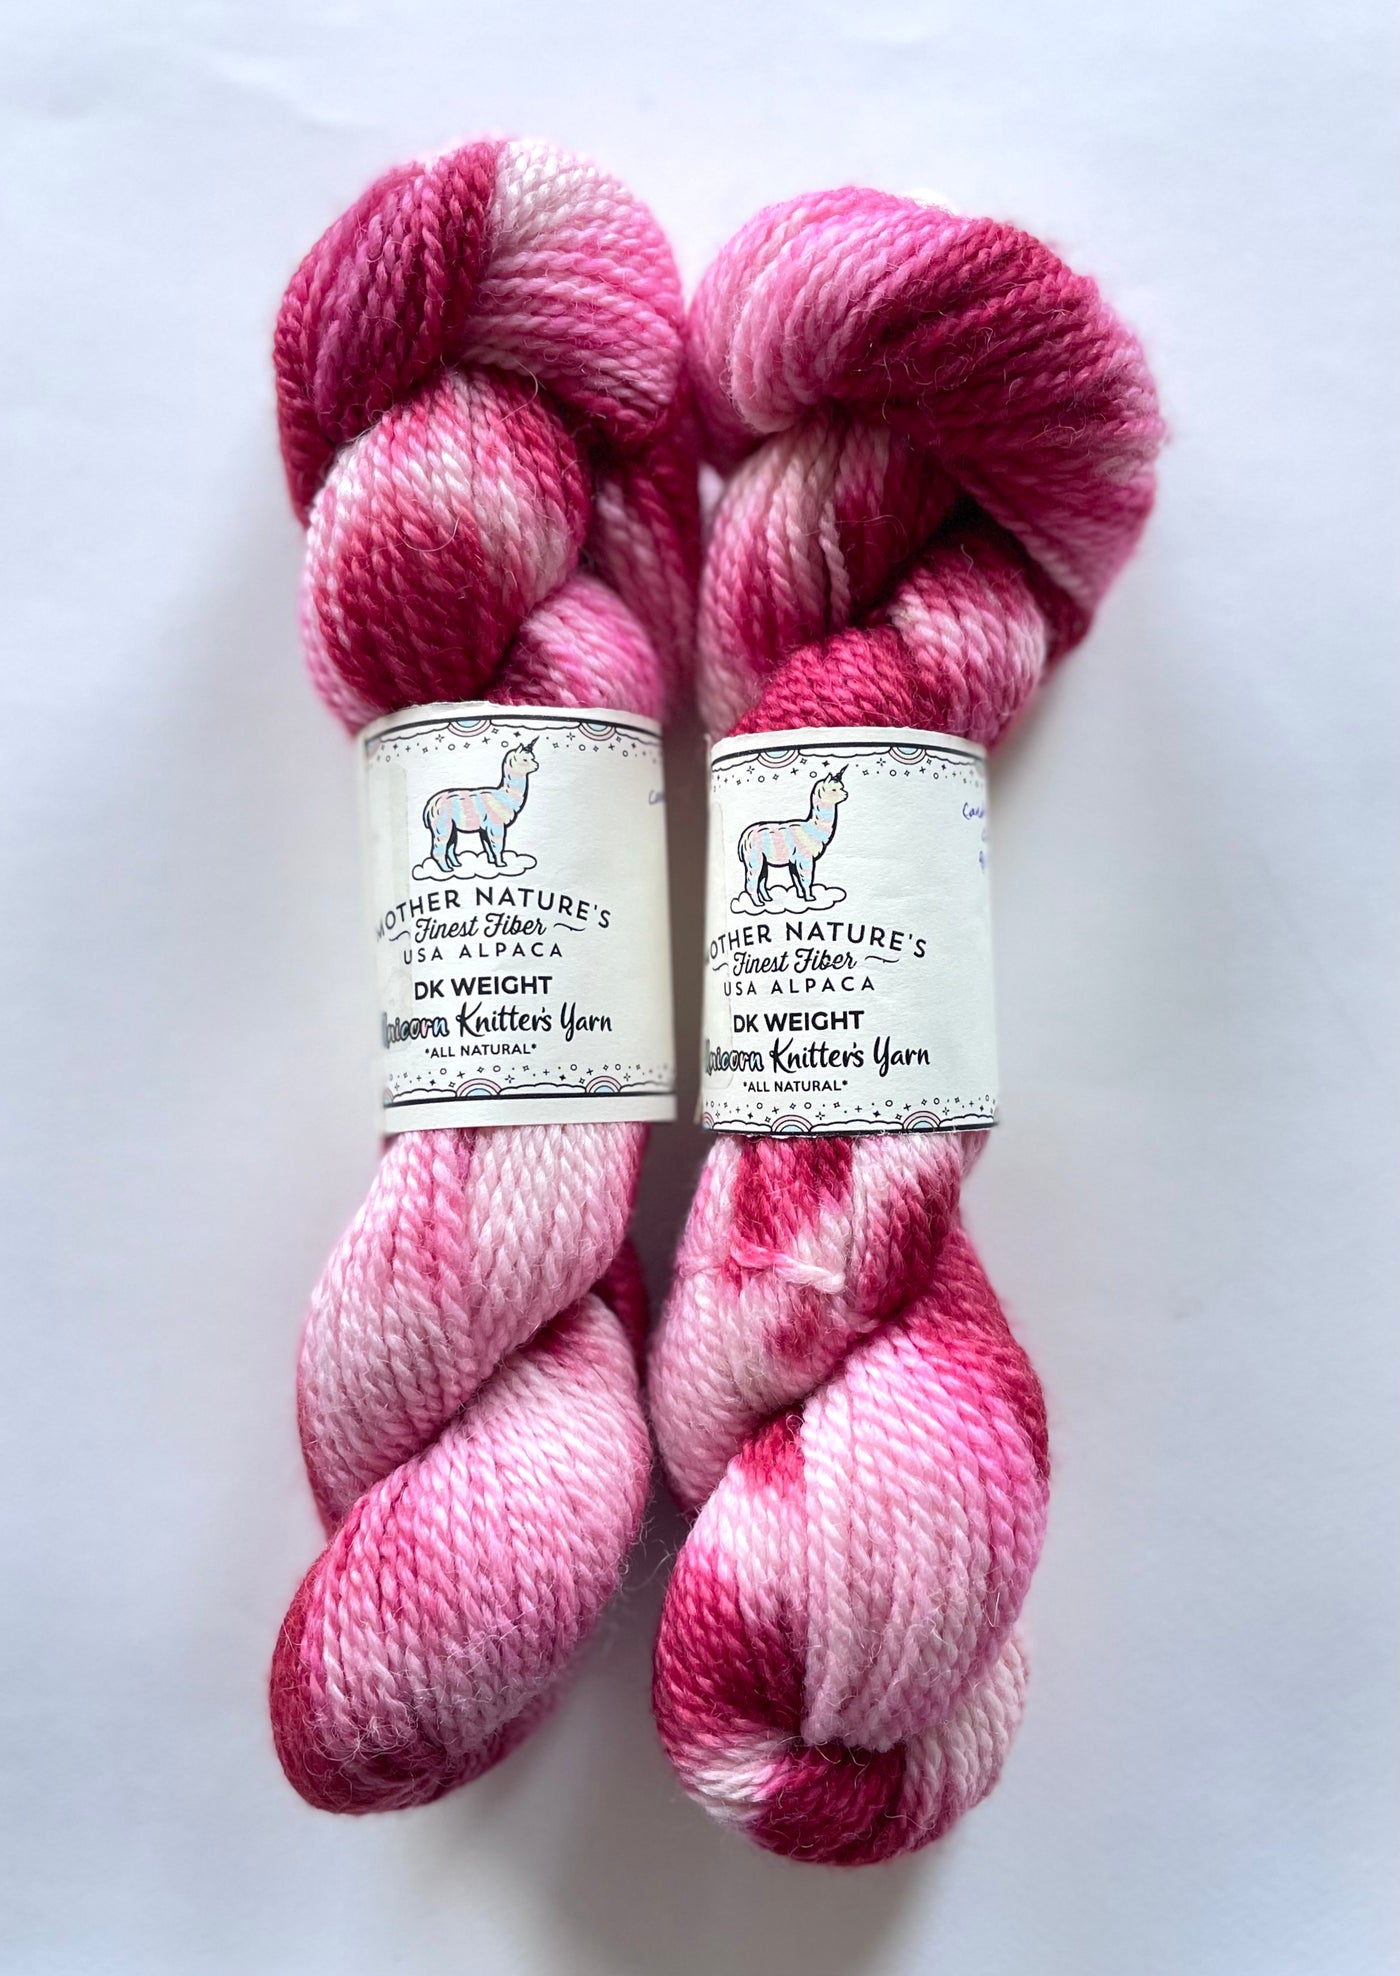 DK Alpaca & Merino Hand Painted Yarn